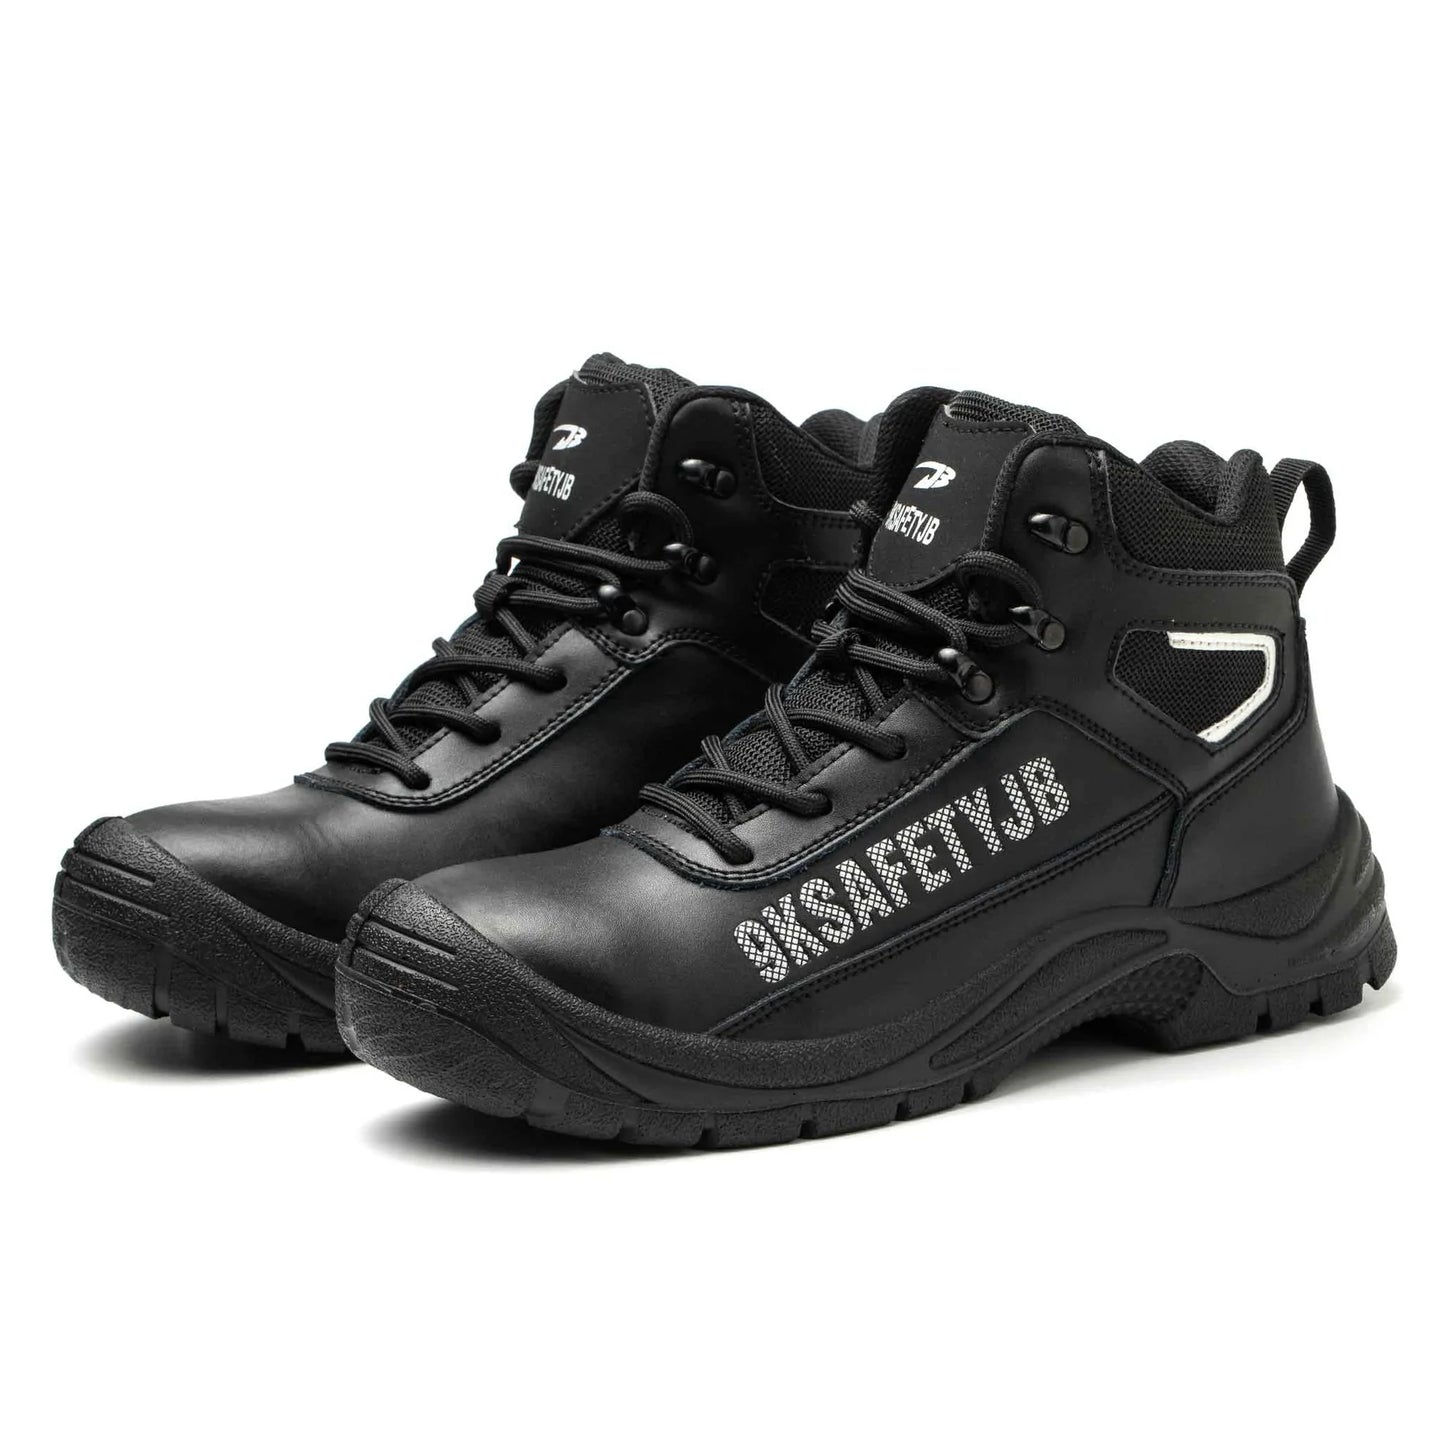 Workmetal Safety - Chaussures de sécurité indestructibles